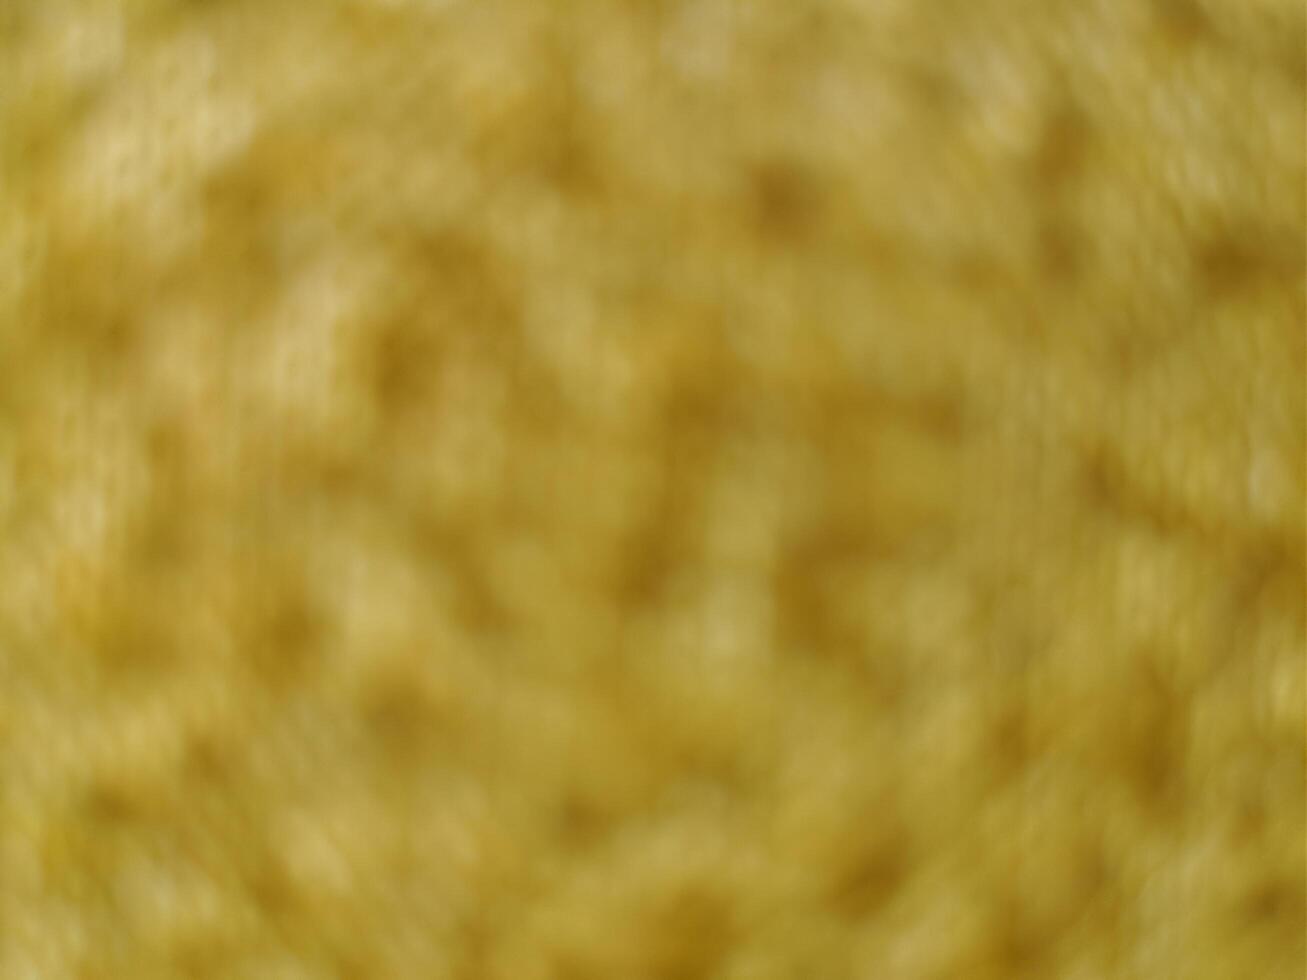 onscherp achtergrond van geel kleding stof kleur foto